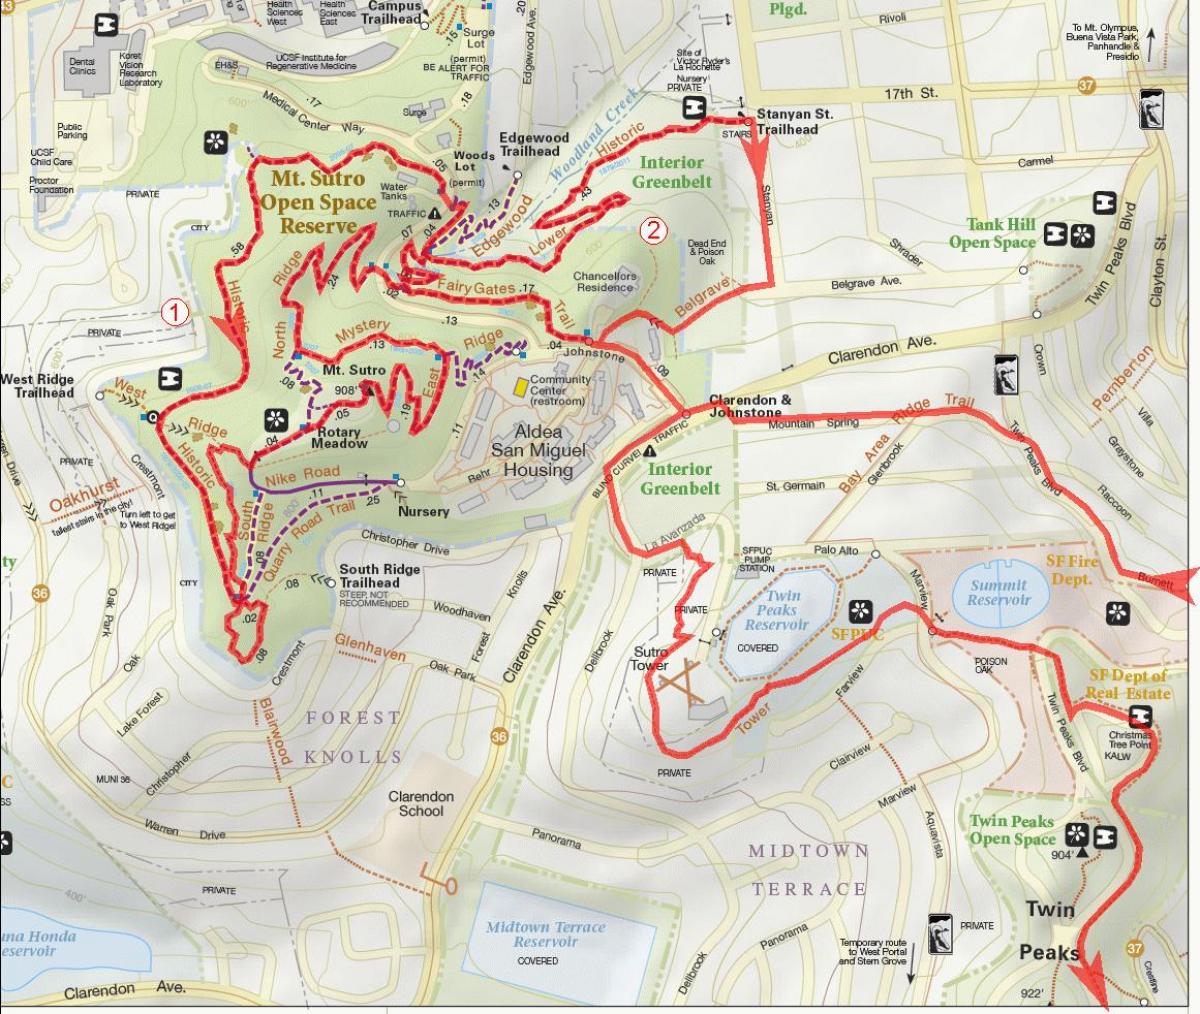 Térkép bay area kerékpárutakon